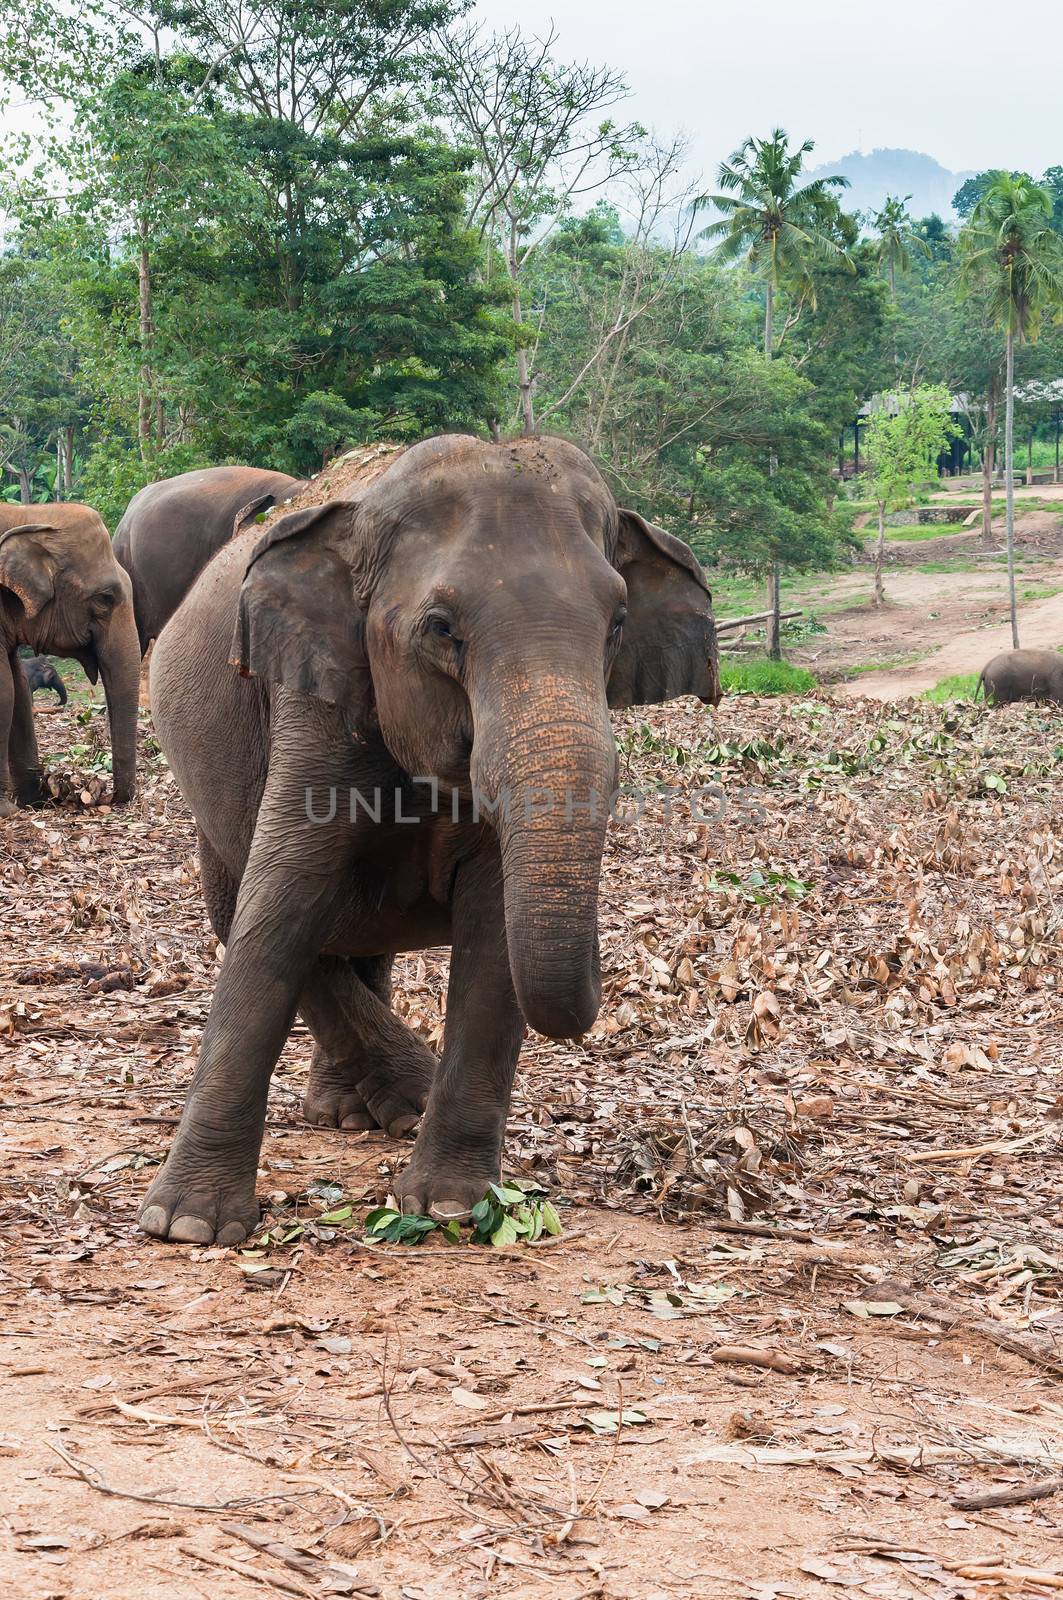 Elephant in Pinnawela Elephant Orphanage, Sri Lanka